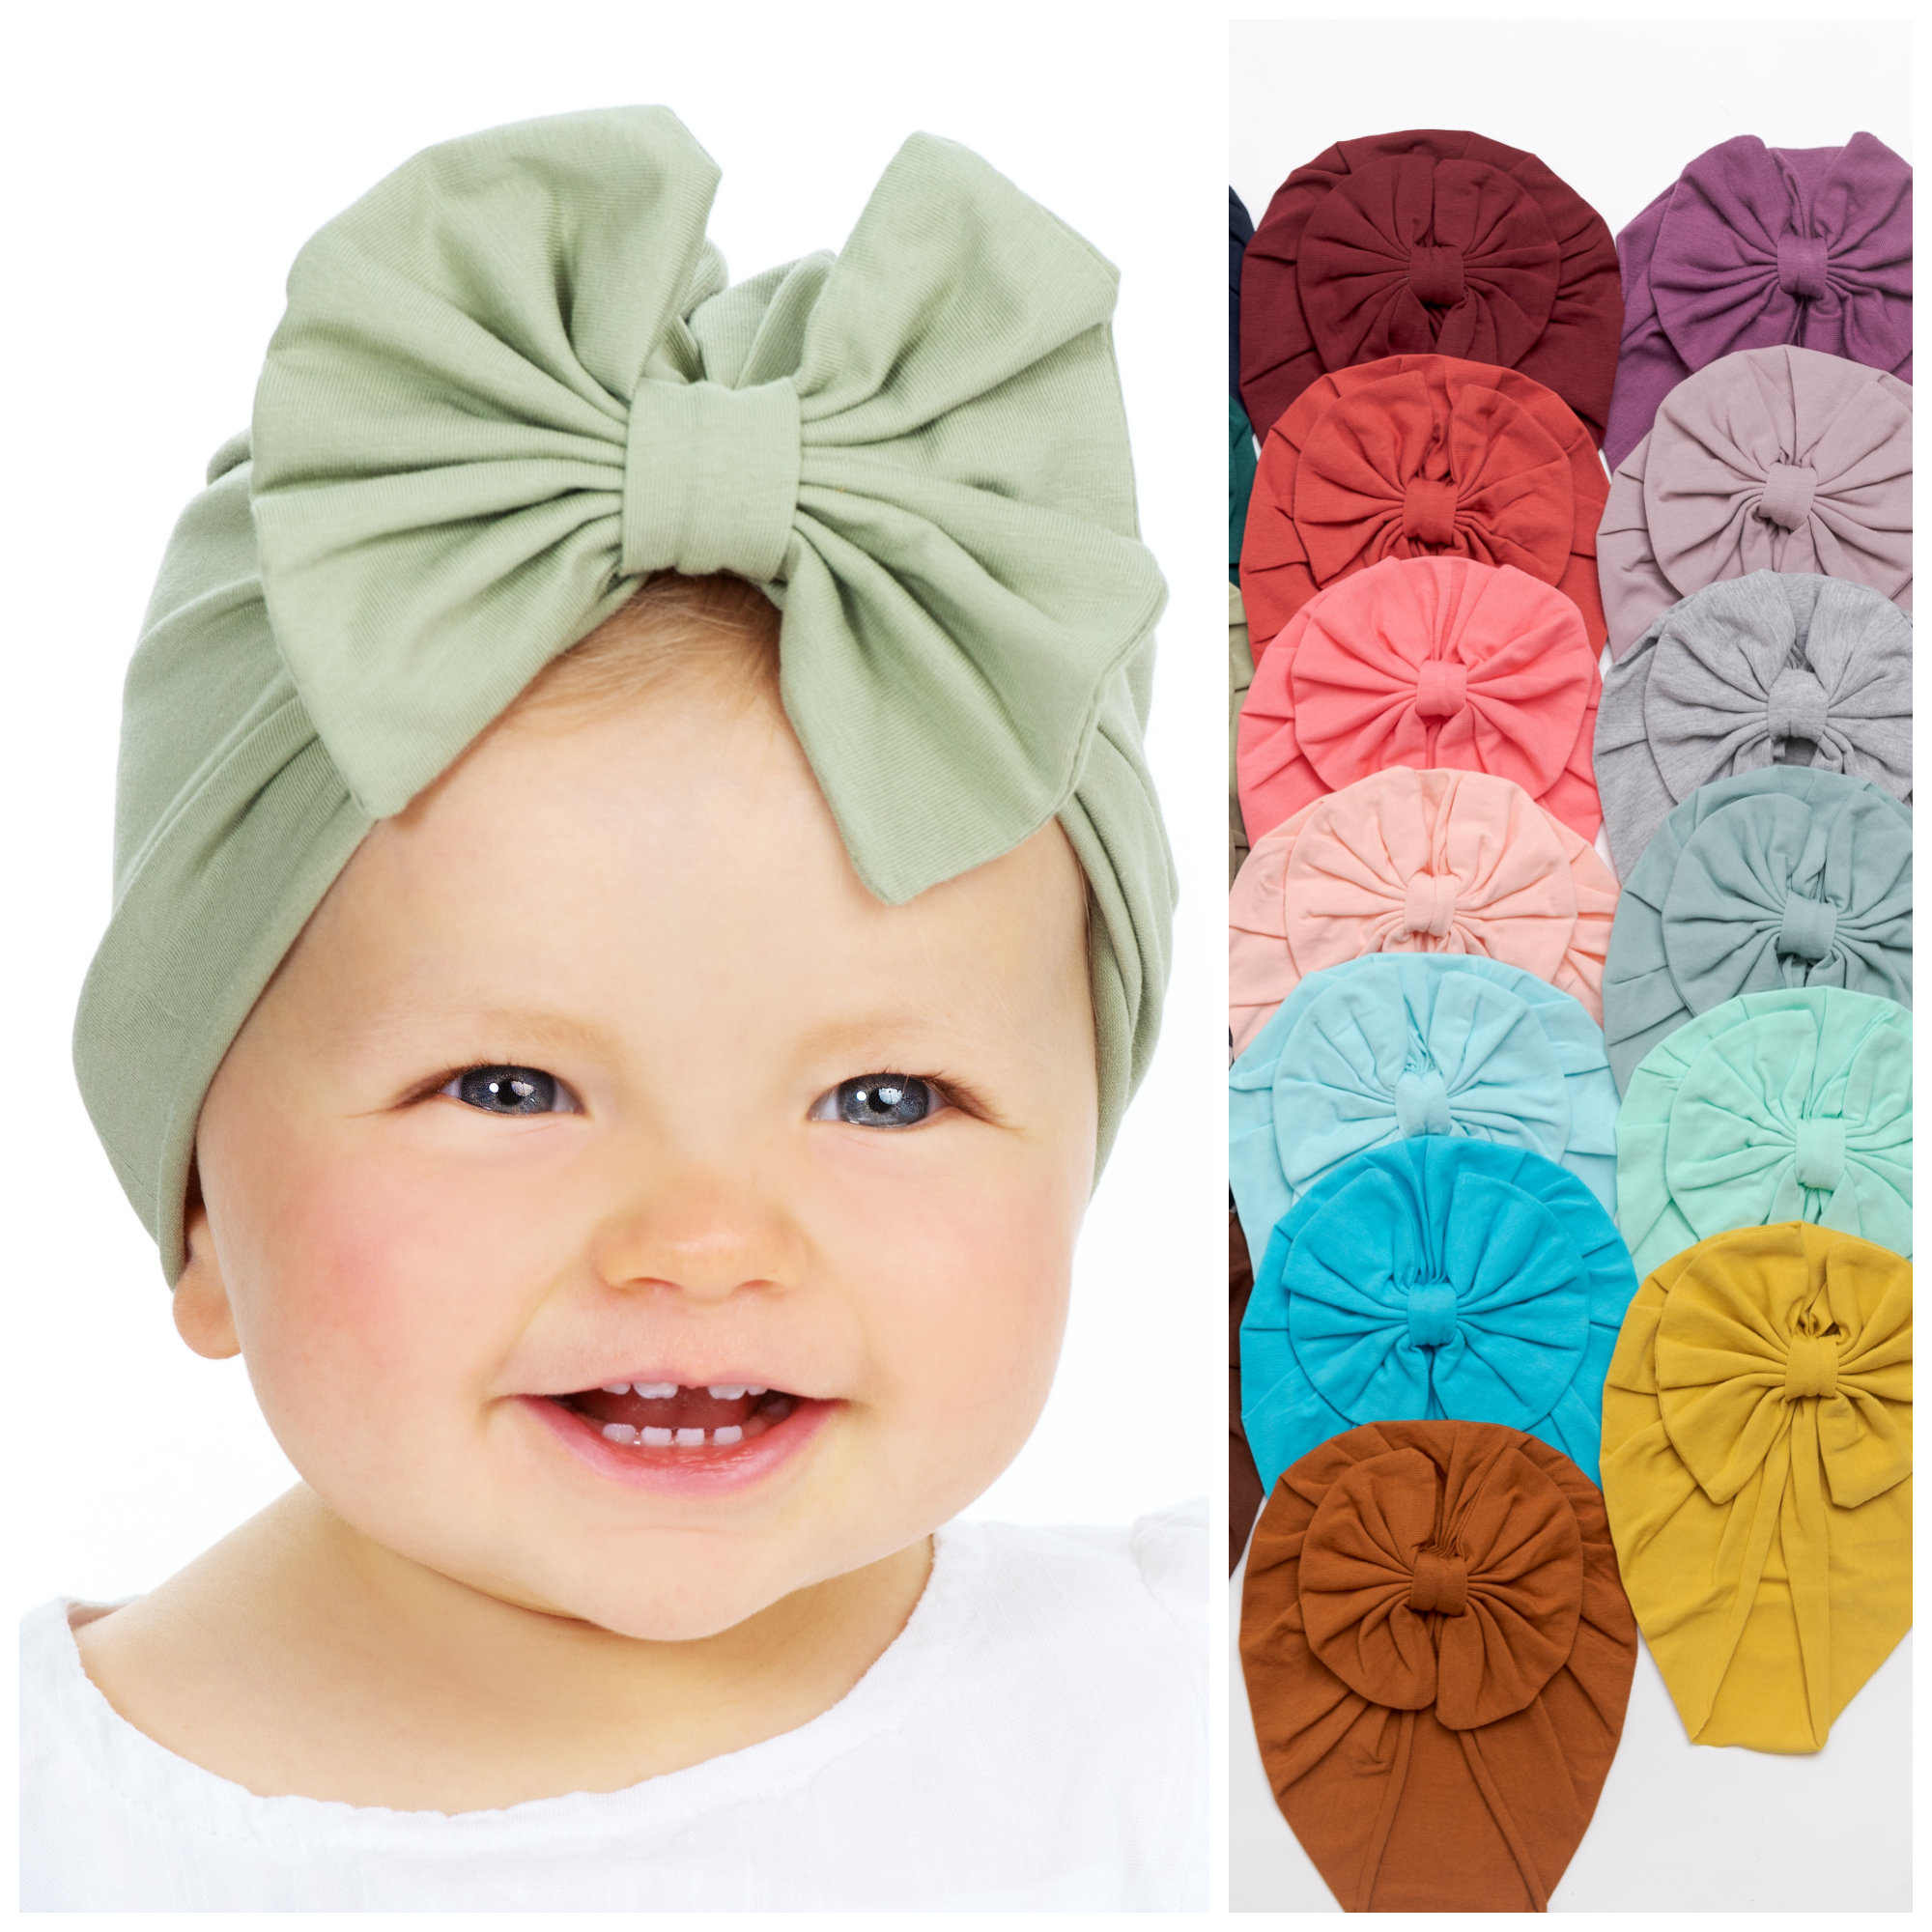 Sombrero de turbante de bebé, turbante de niña bebé, turbante de bebé BOW,  sombrero elástico de bebé, diadema de turbante de bebé, sombrero infantil,  turbante recién nacido, diademas de bebé 